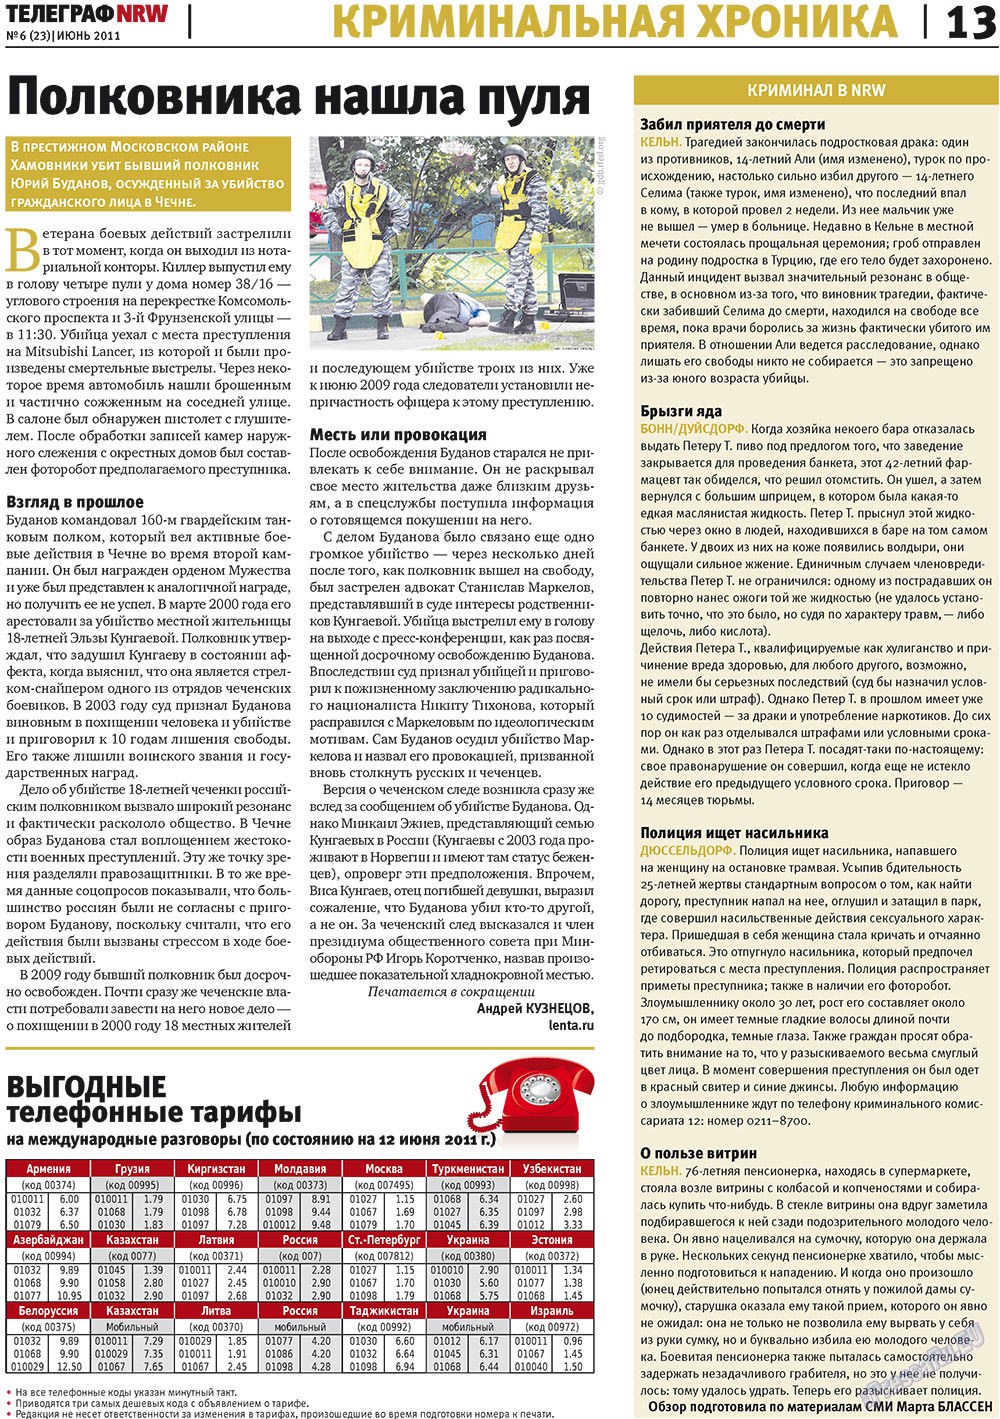 Телеграф NRW (газета). 2011 год, номер 6, стр. 13